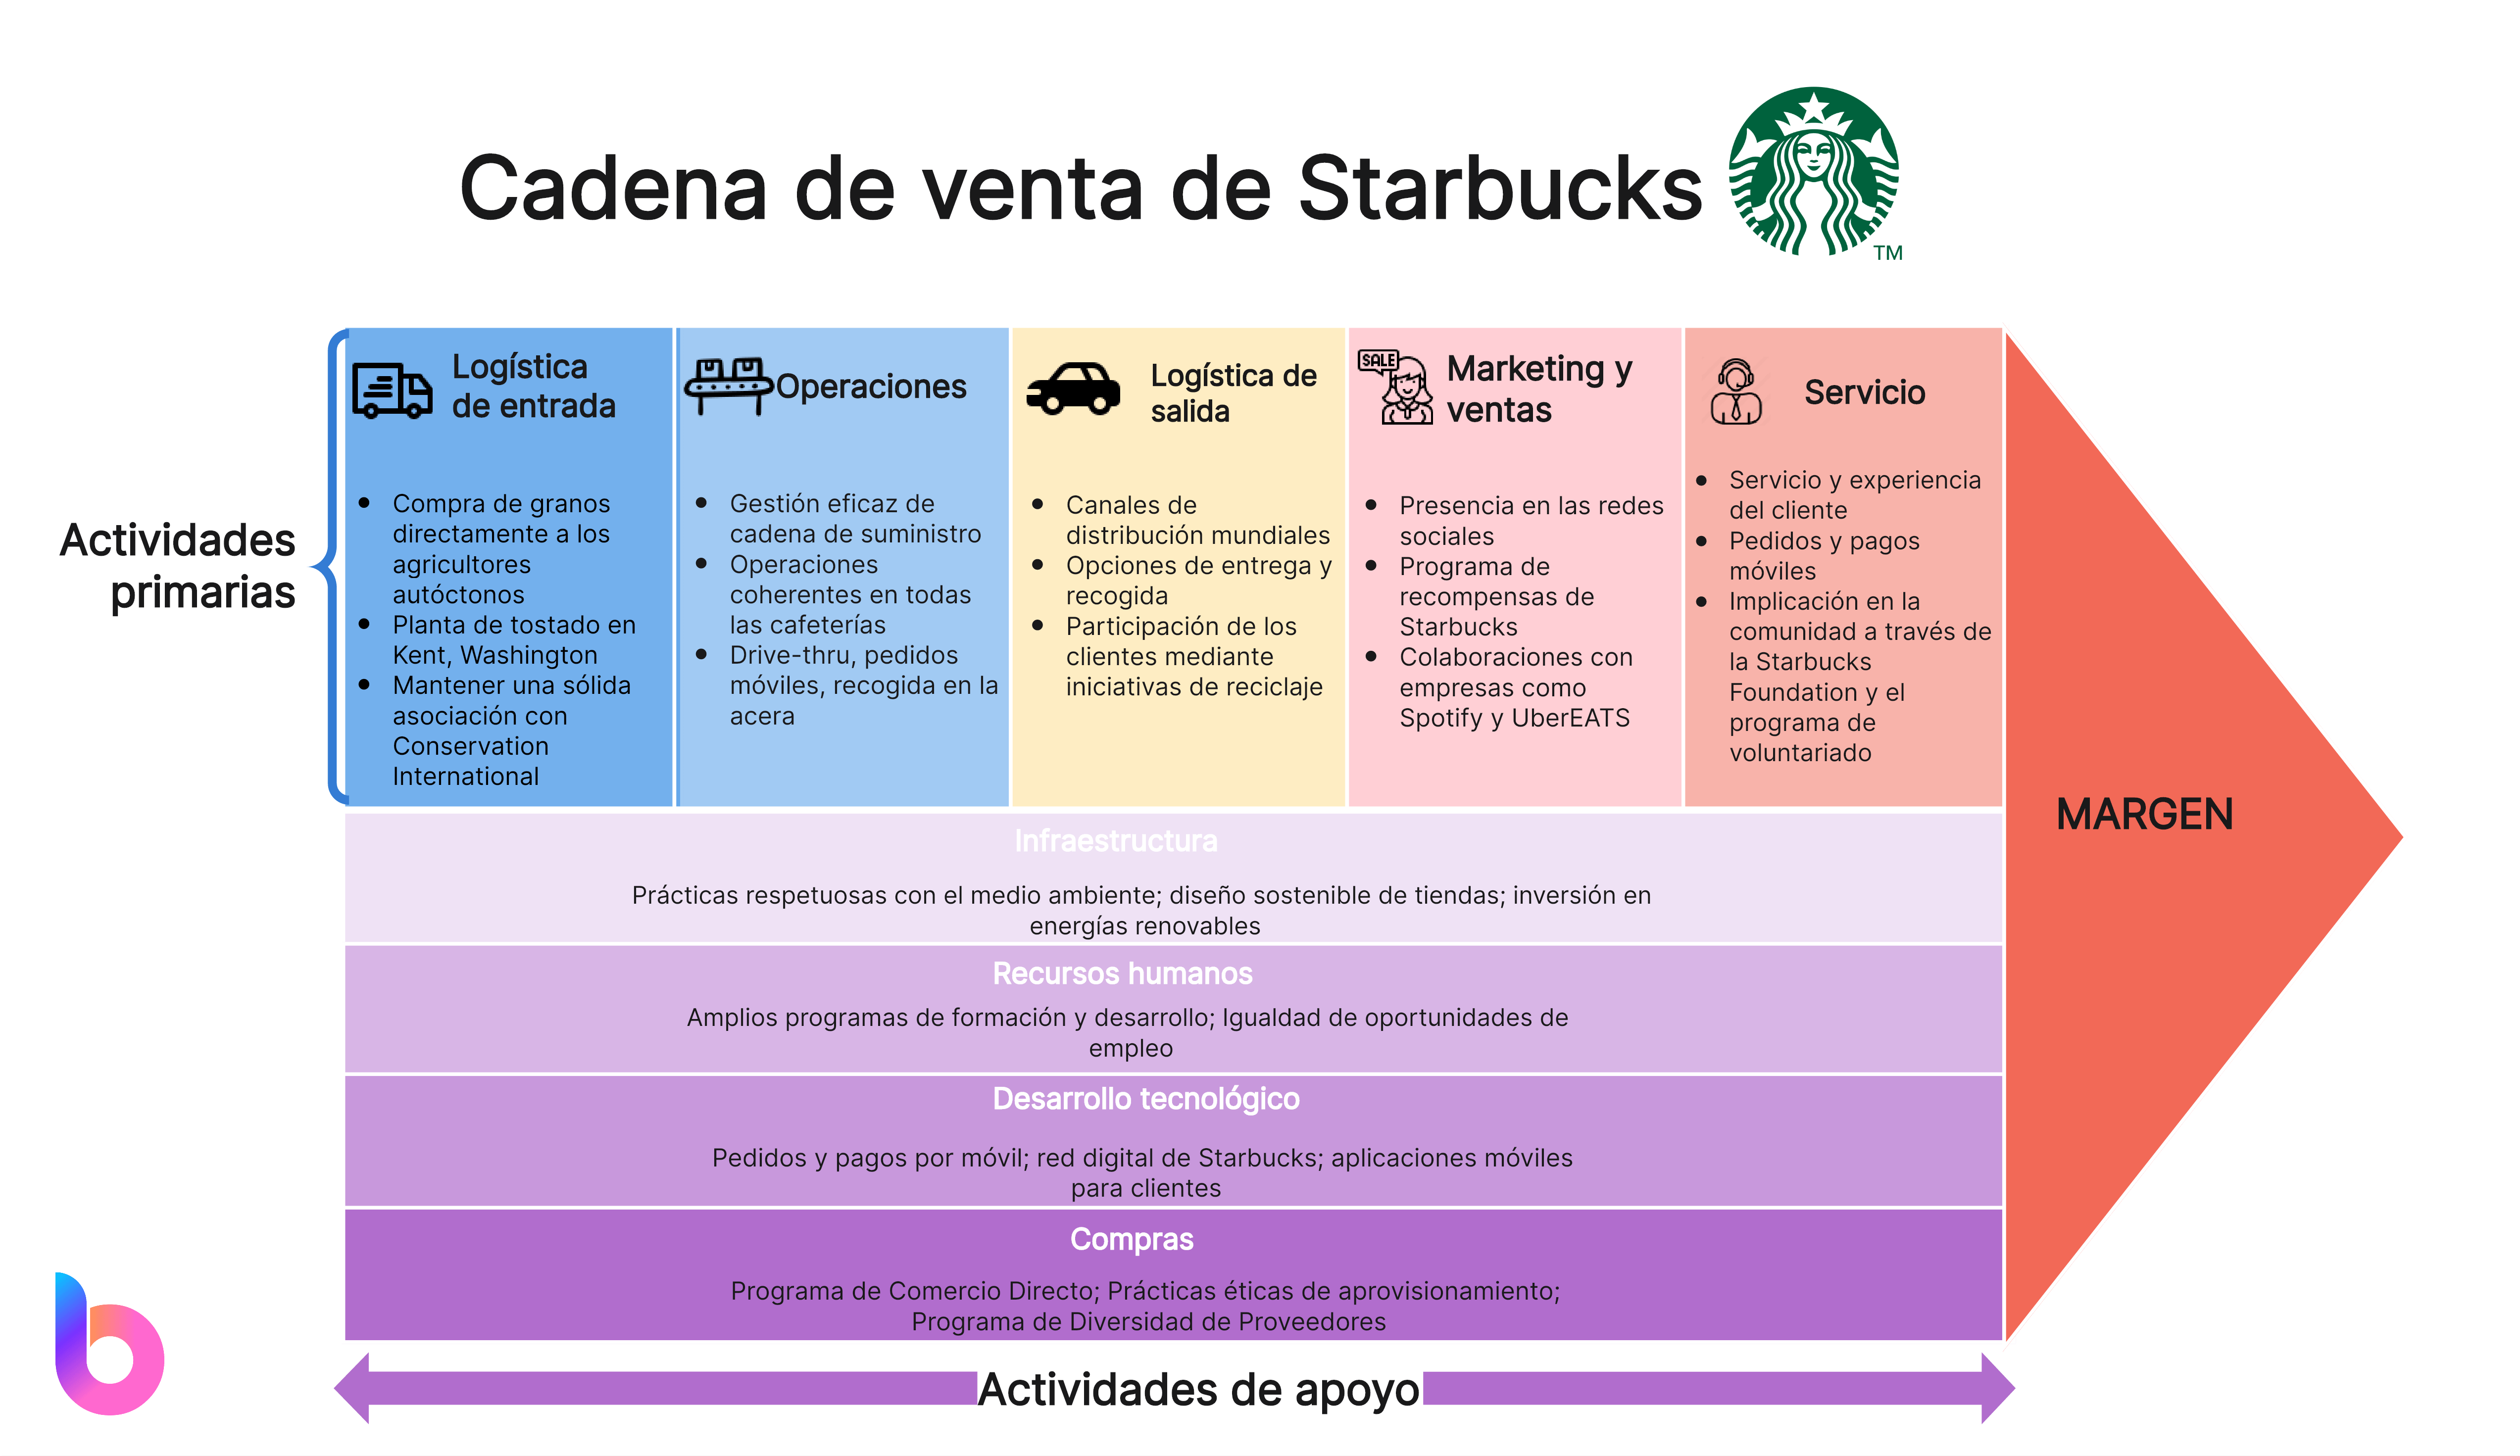 Cadena de valor de Starbucks